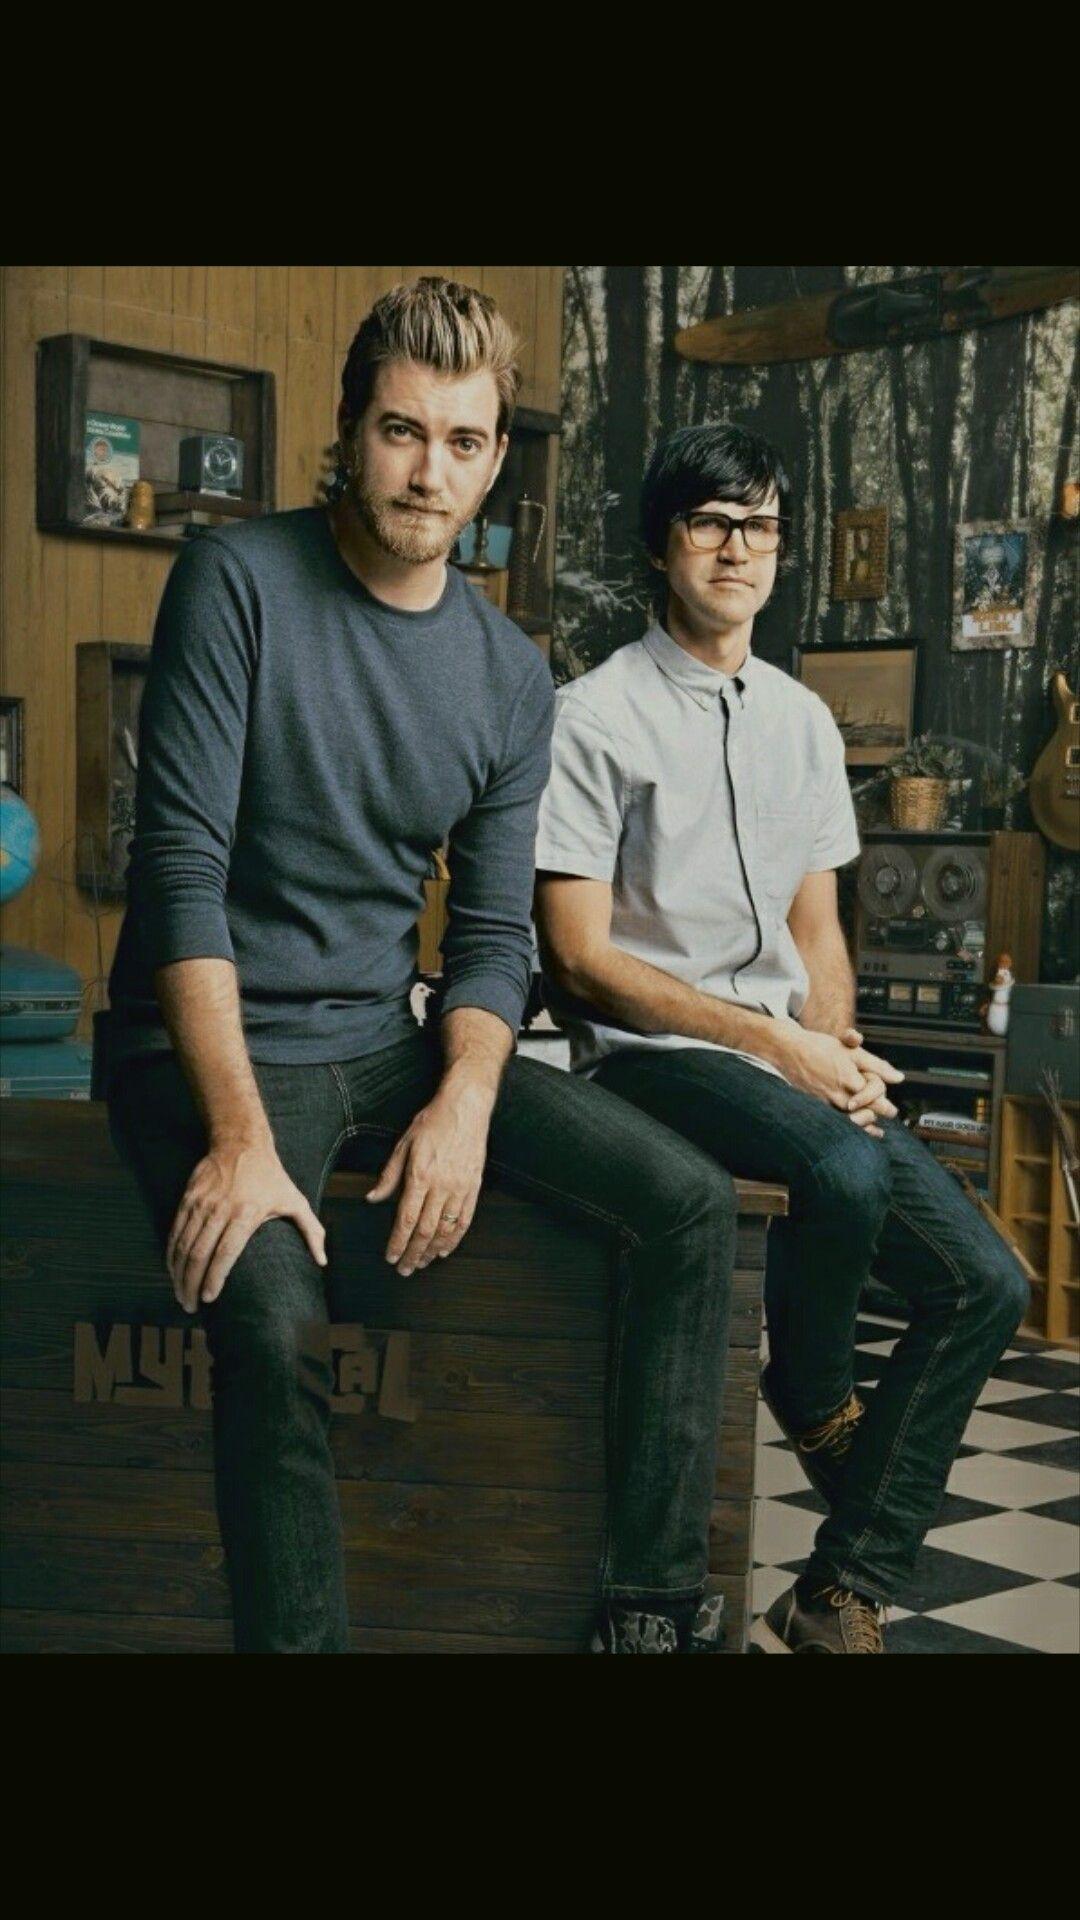 Rhett and Link wallpaper. Good Mythical Morning ❤. Good mythical